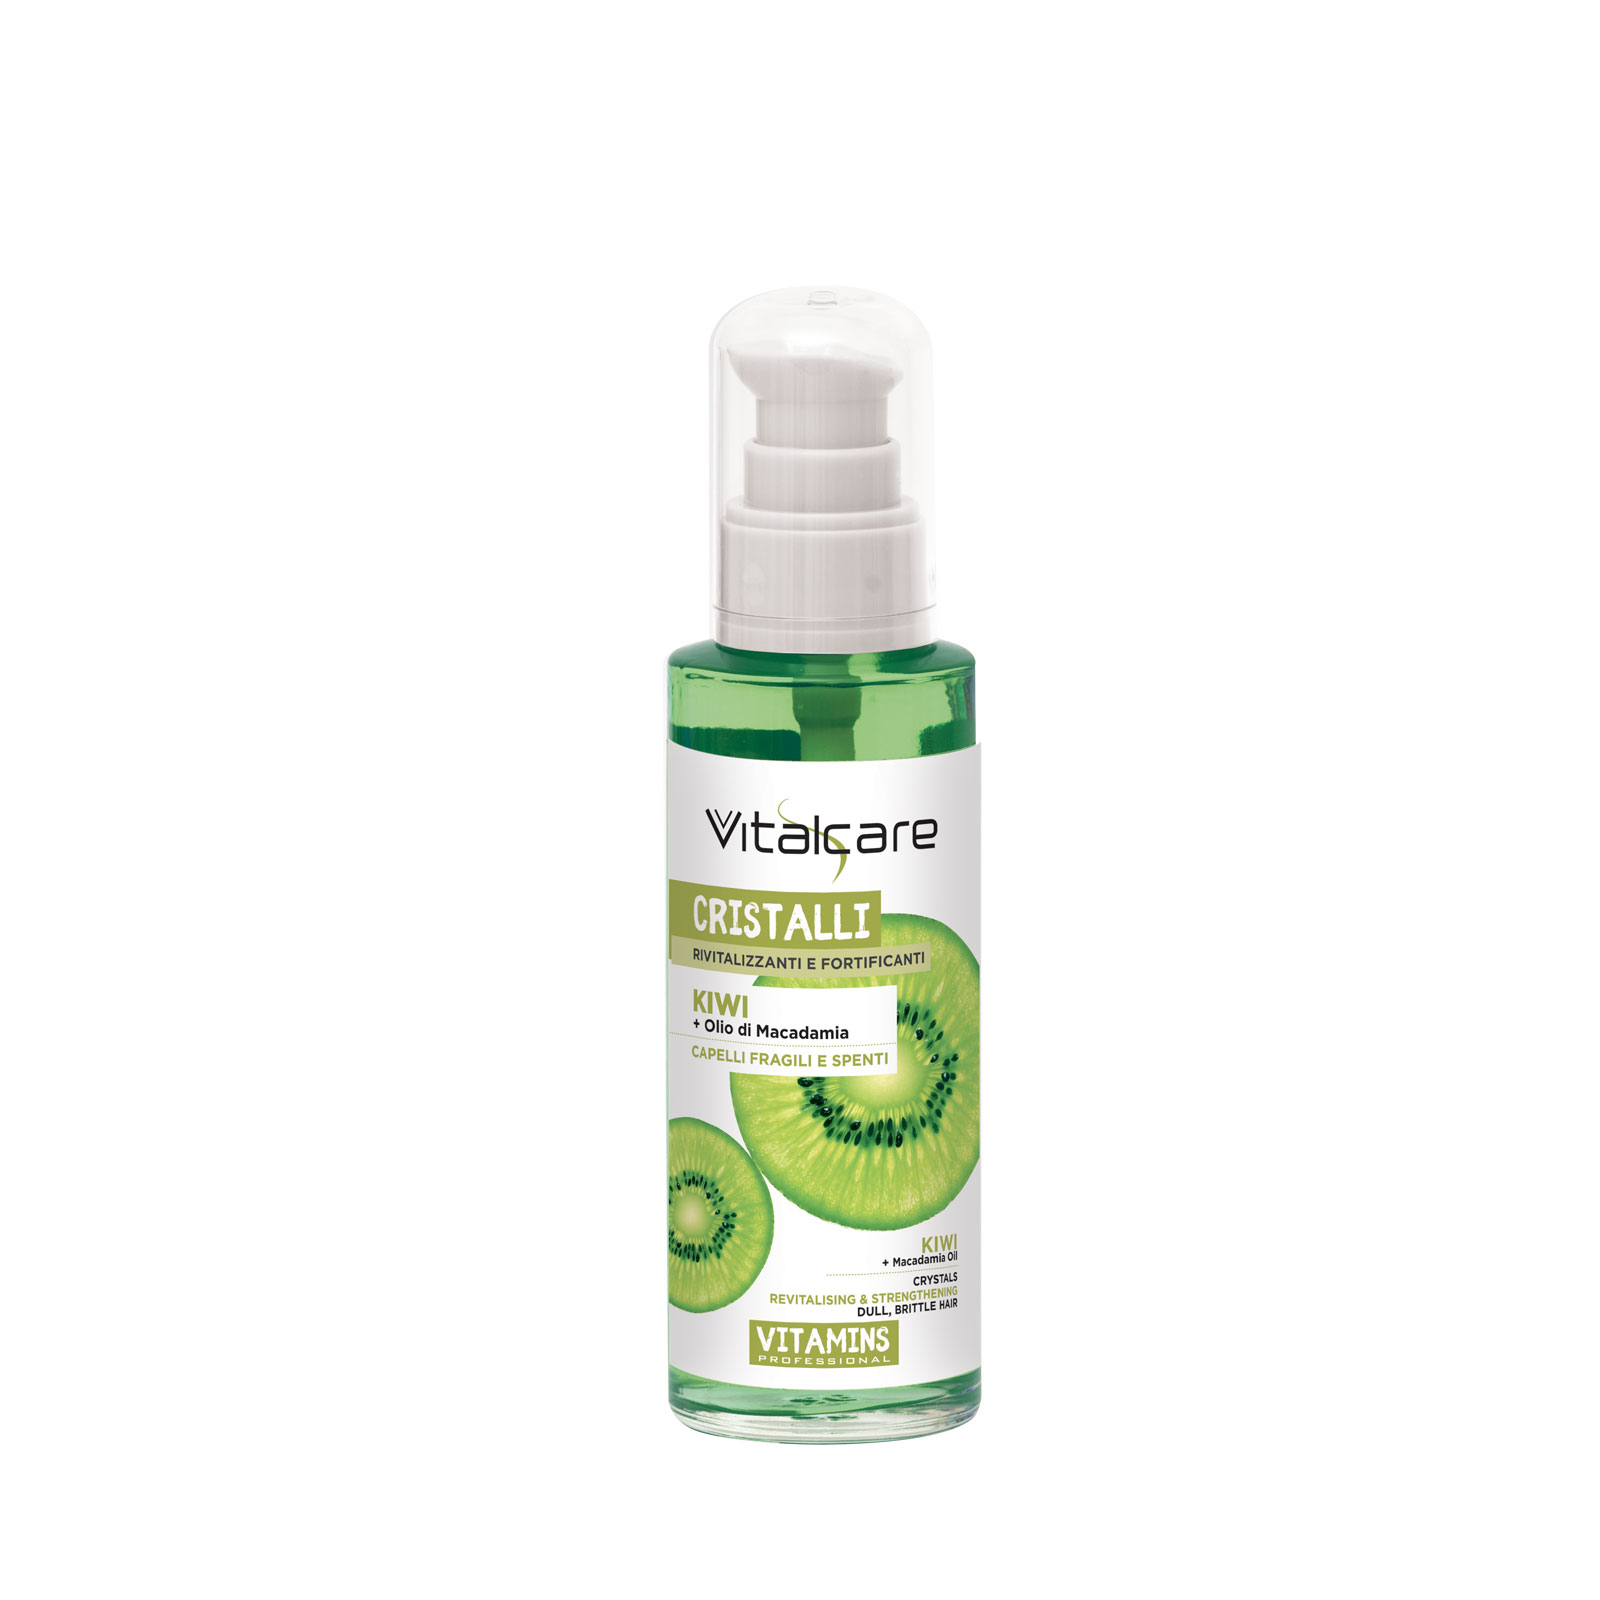 Сыворотка для волос Vitalcare Vitamins восстанавливающая, укрепляющая, с киви, 100 мл